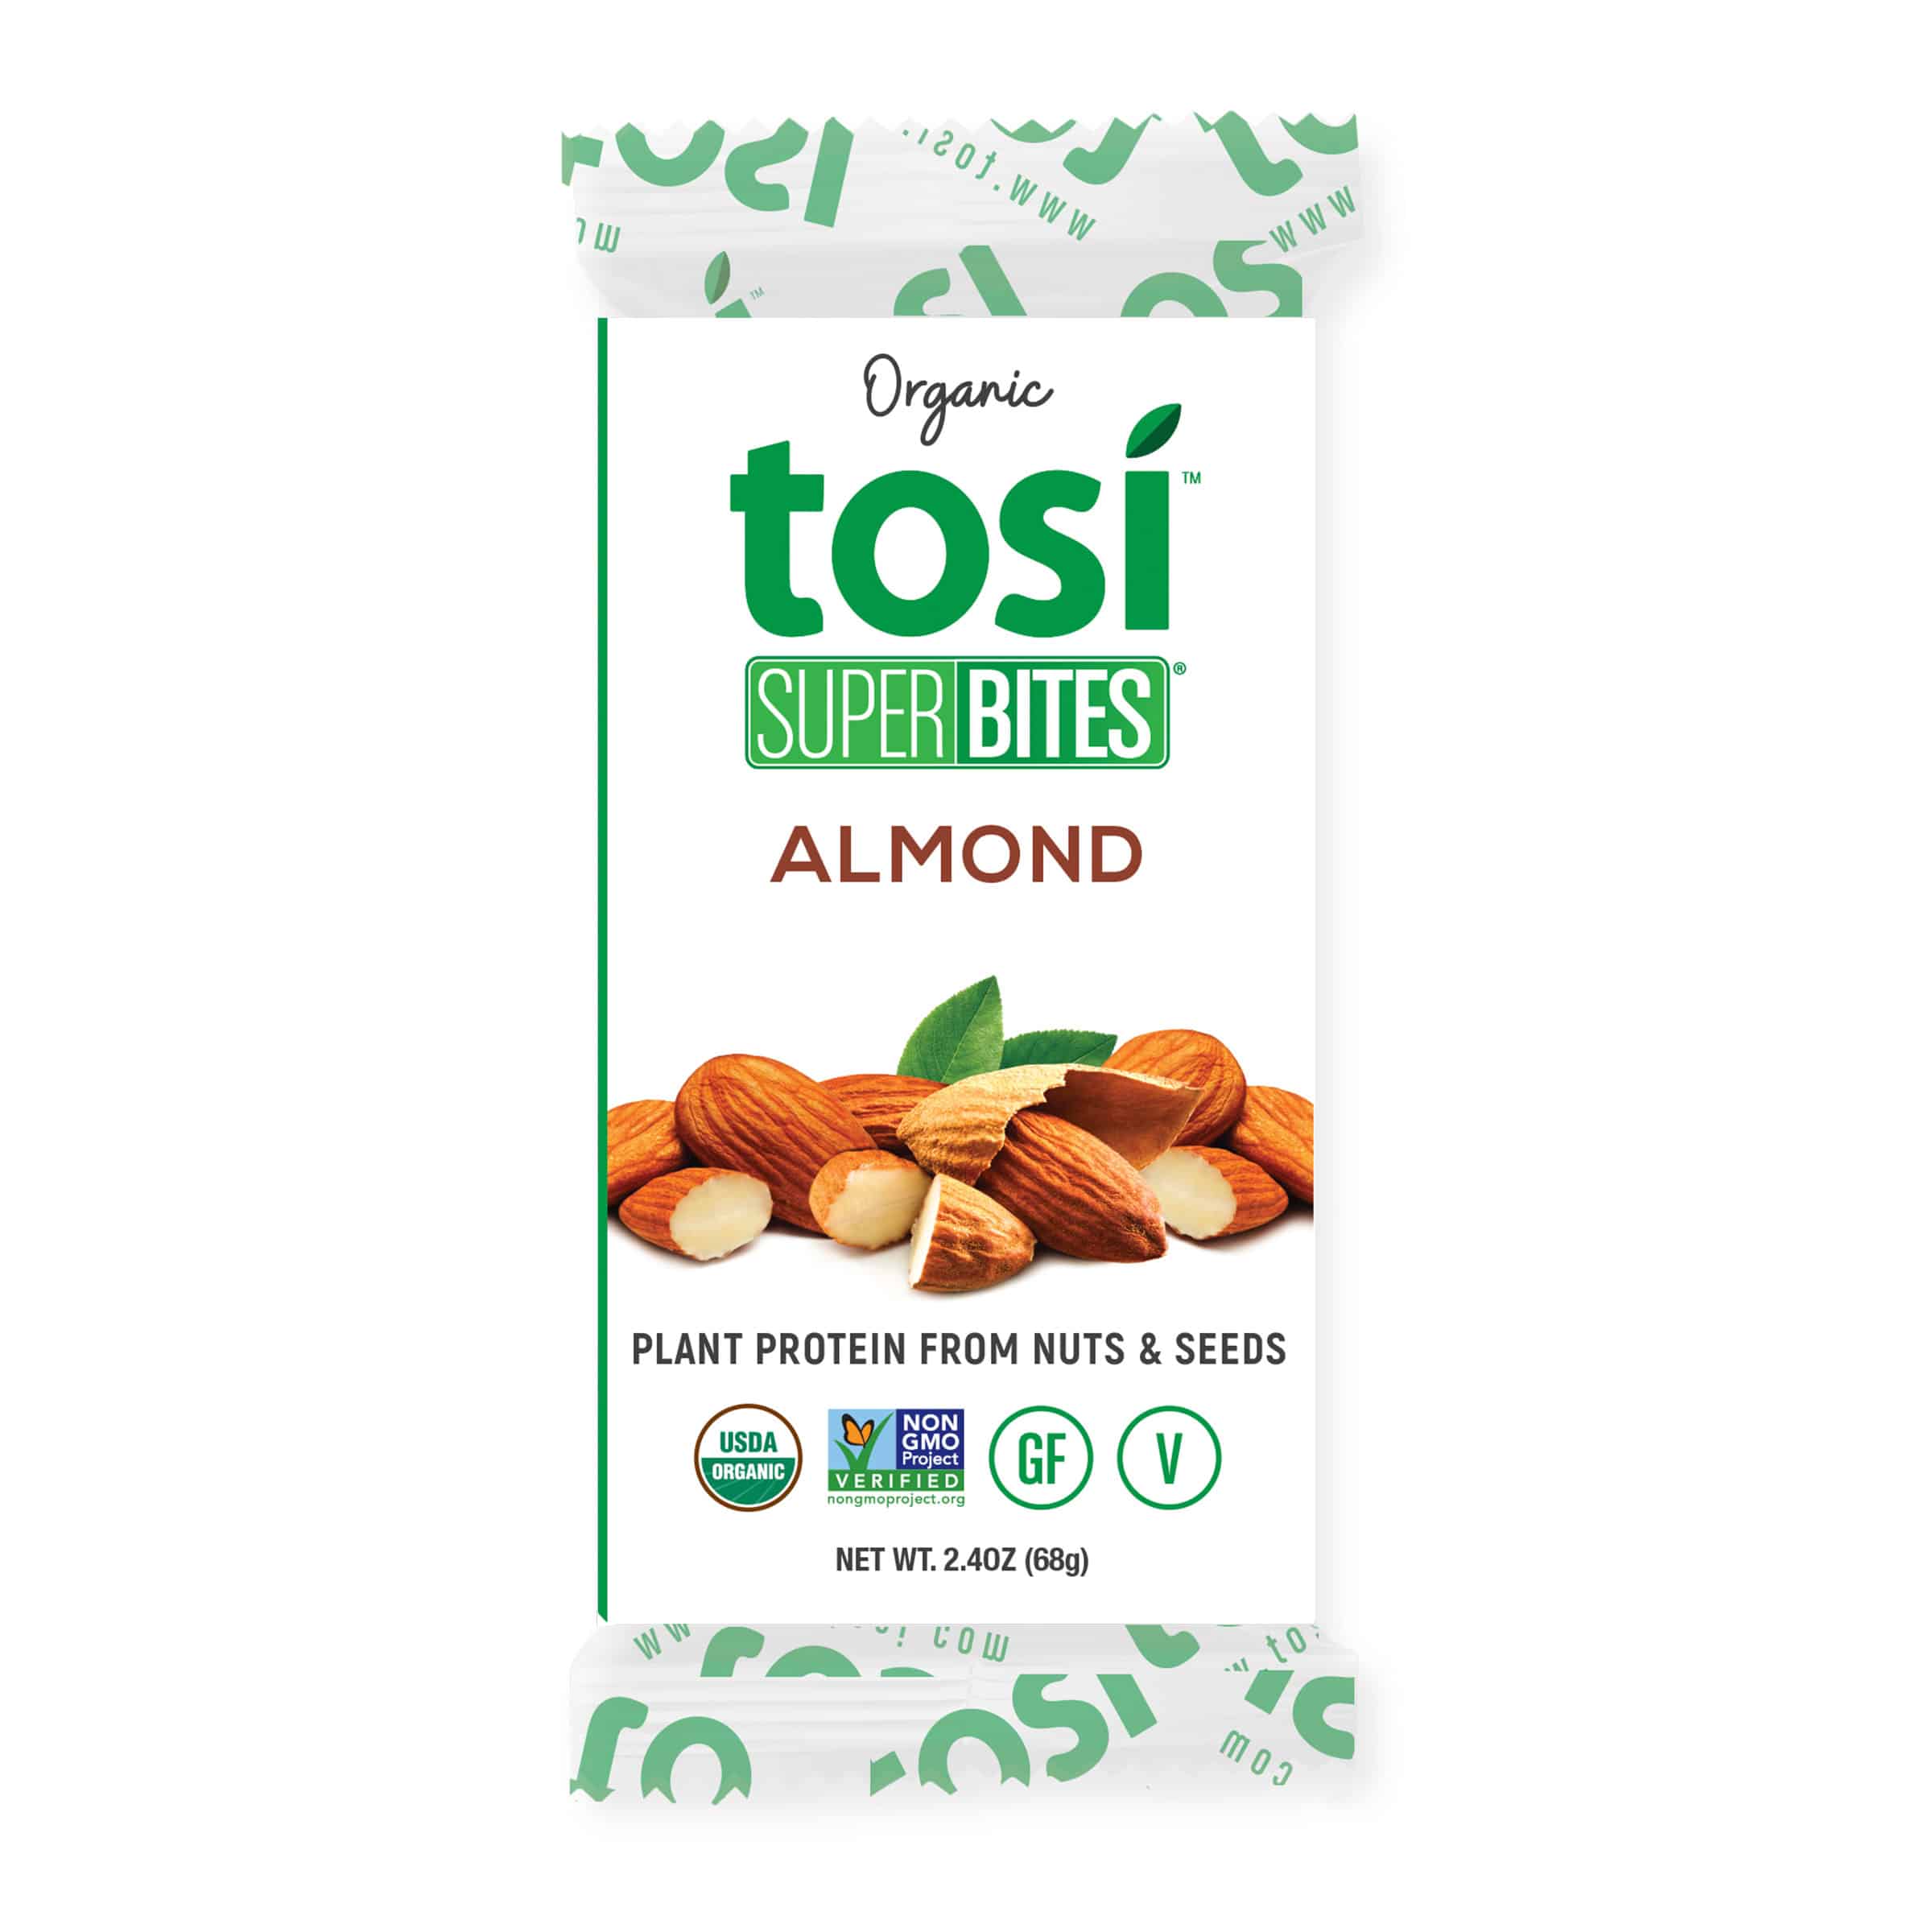 Tosi SuperBites Almond 4 innerpacks per case 28.8 oz